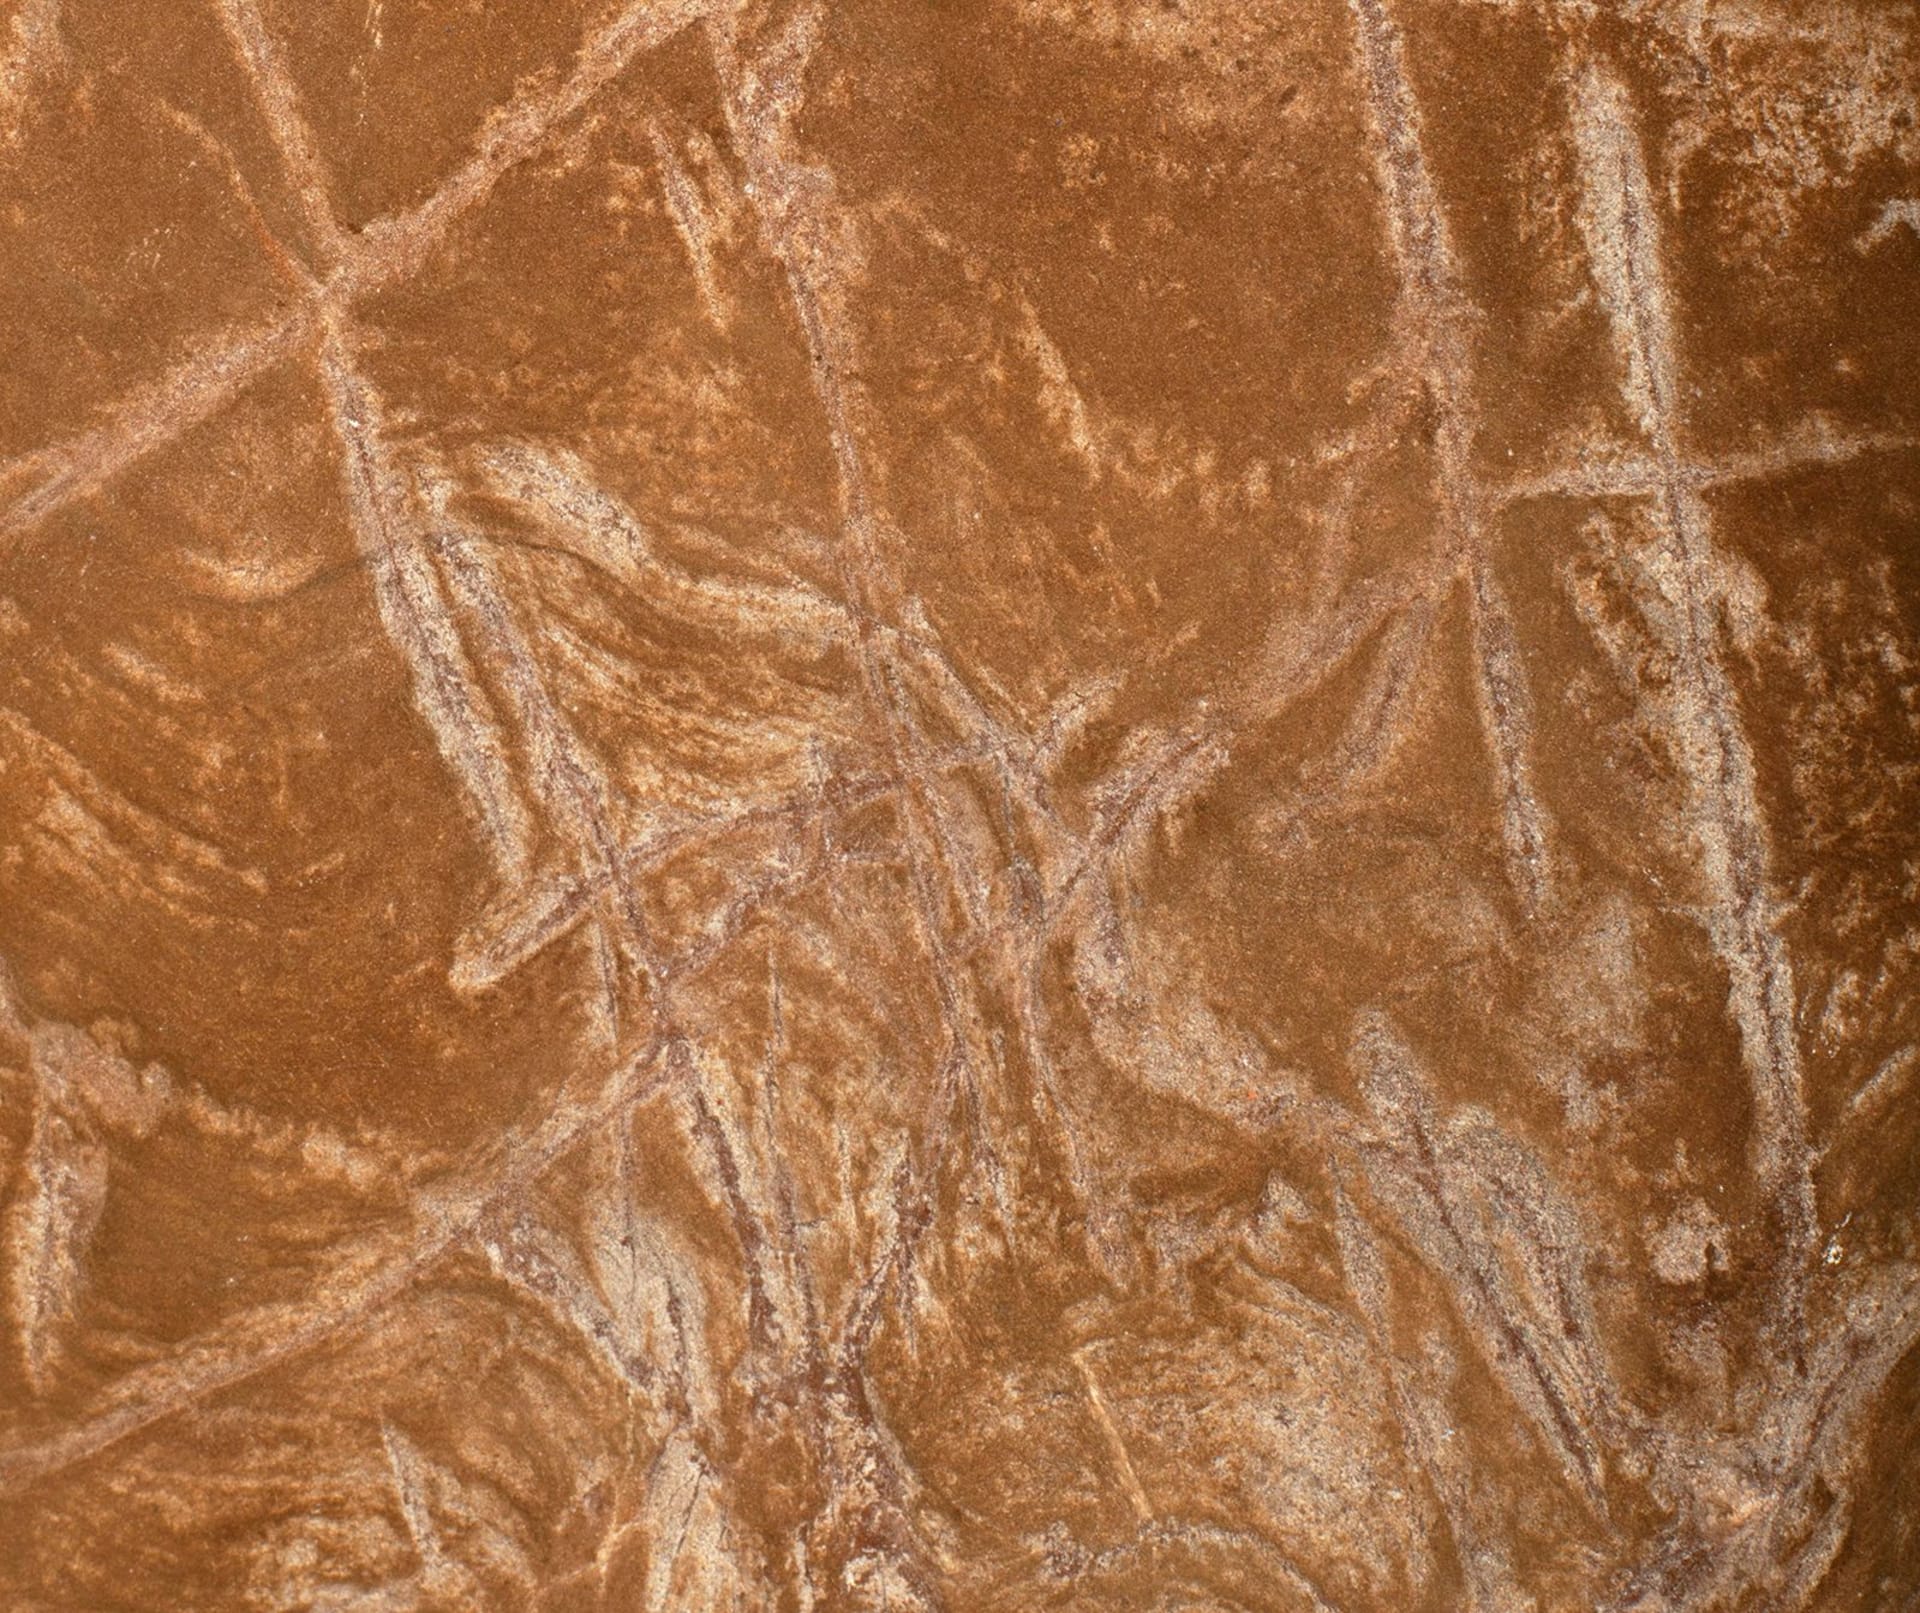 Některé z rytin odhalují známky zbloudilých čar a dokonce jejich vymazání, podobně jako se písek používá k odstranění značek, než byla na vrcholu dokončena další řezba.